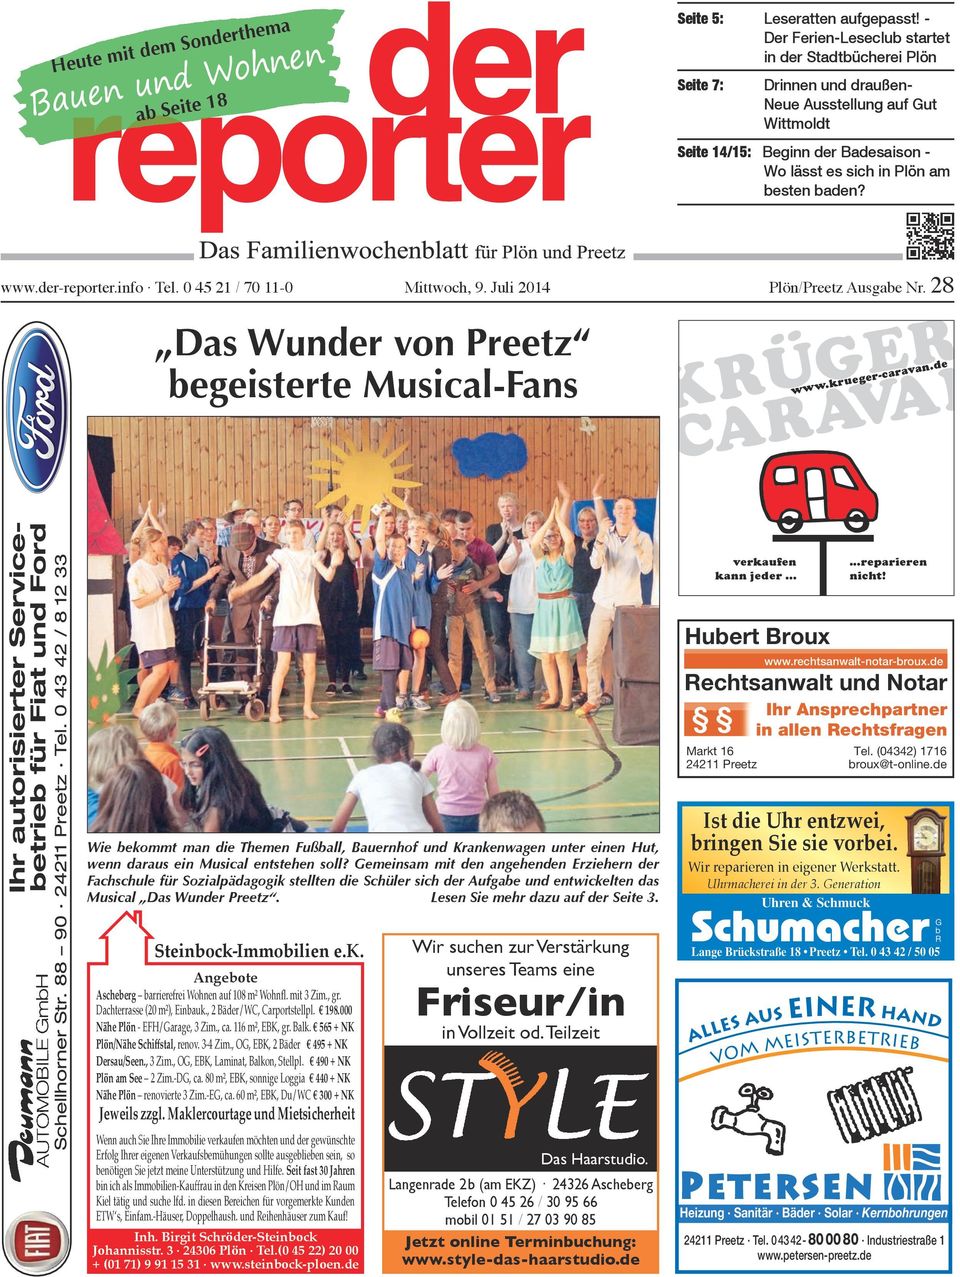 www.der-reporter.info Tel. 0 45 21 / 70 11-0 Mittwoch, 9. Juli 2014 Plön/Preetz Ausgabe Nr. 28 Das Wunder von Preetz begeisterte Musical-Fans KRÜGER- CARAVAN www.krueger-caravan.